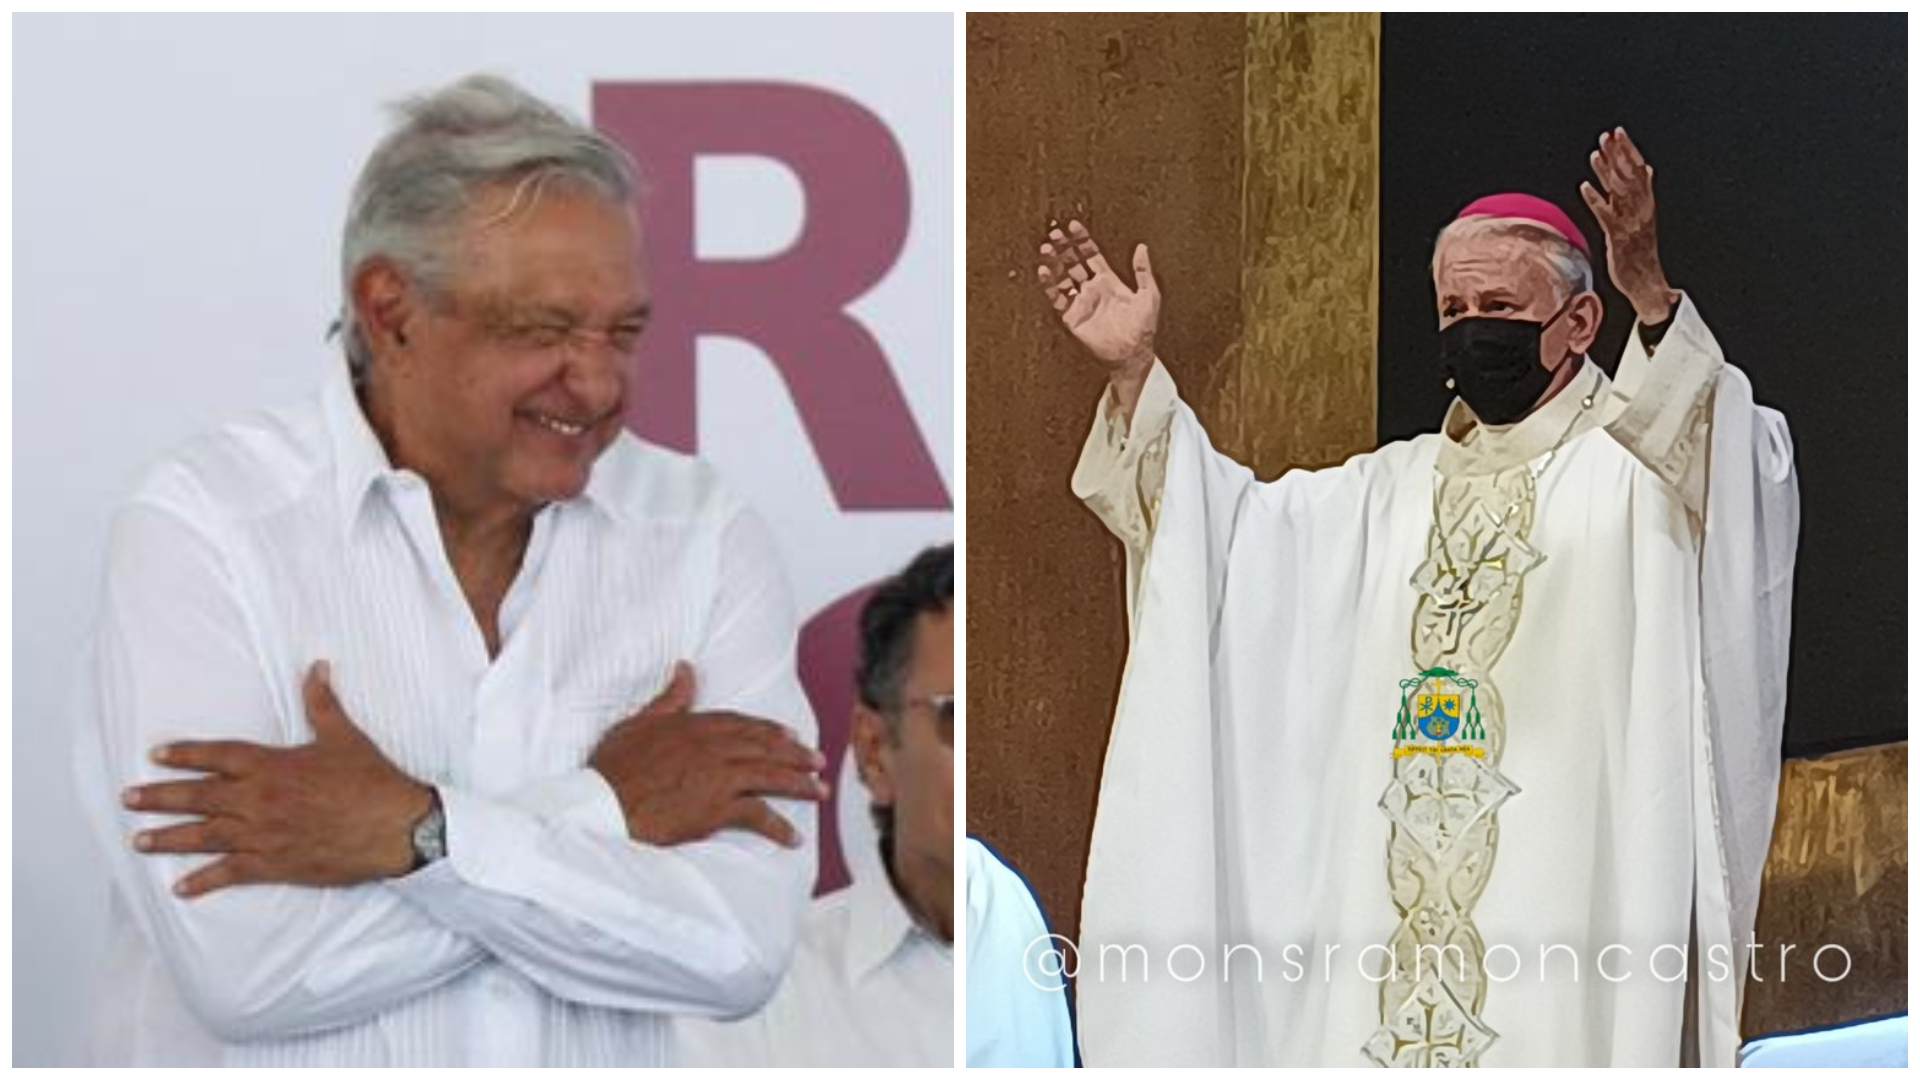 “Abrazos, no balazos es demagogia y complicidad”: Obispo de Cuernavaca criticó la estrategia de seguridad de AMLO